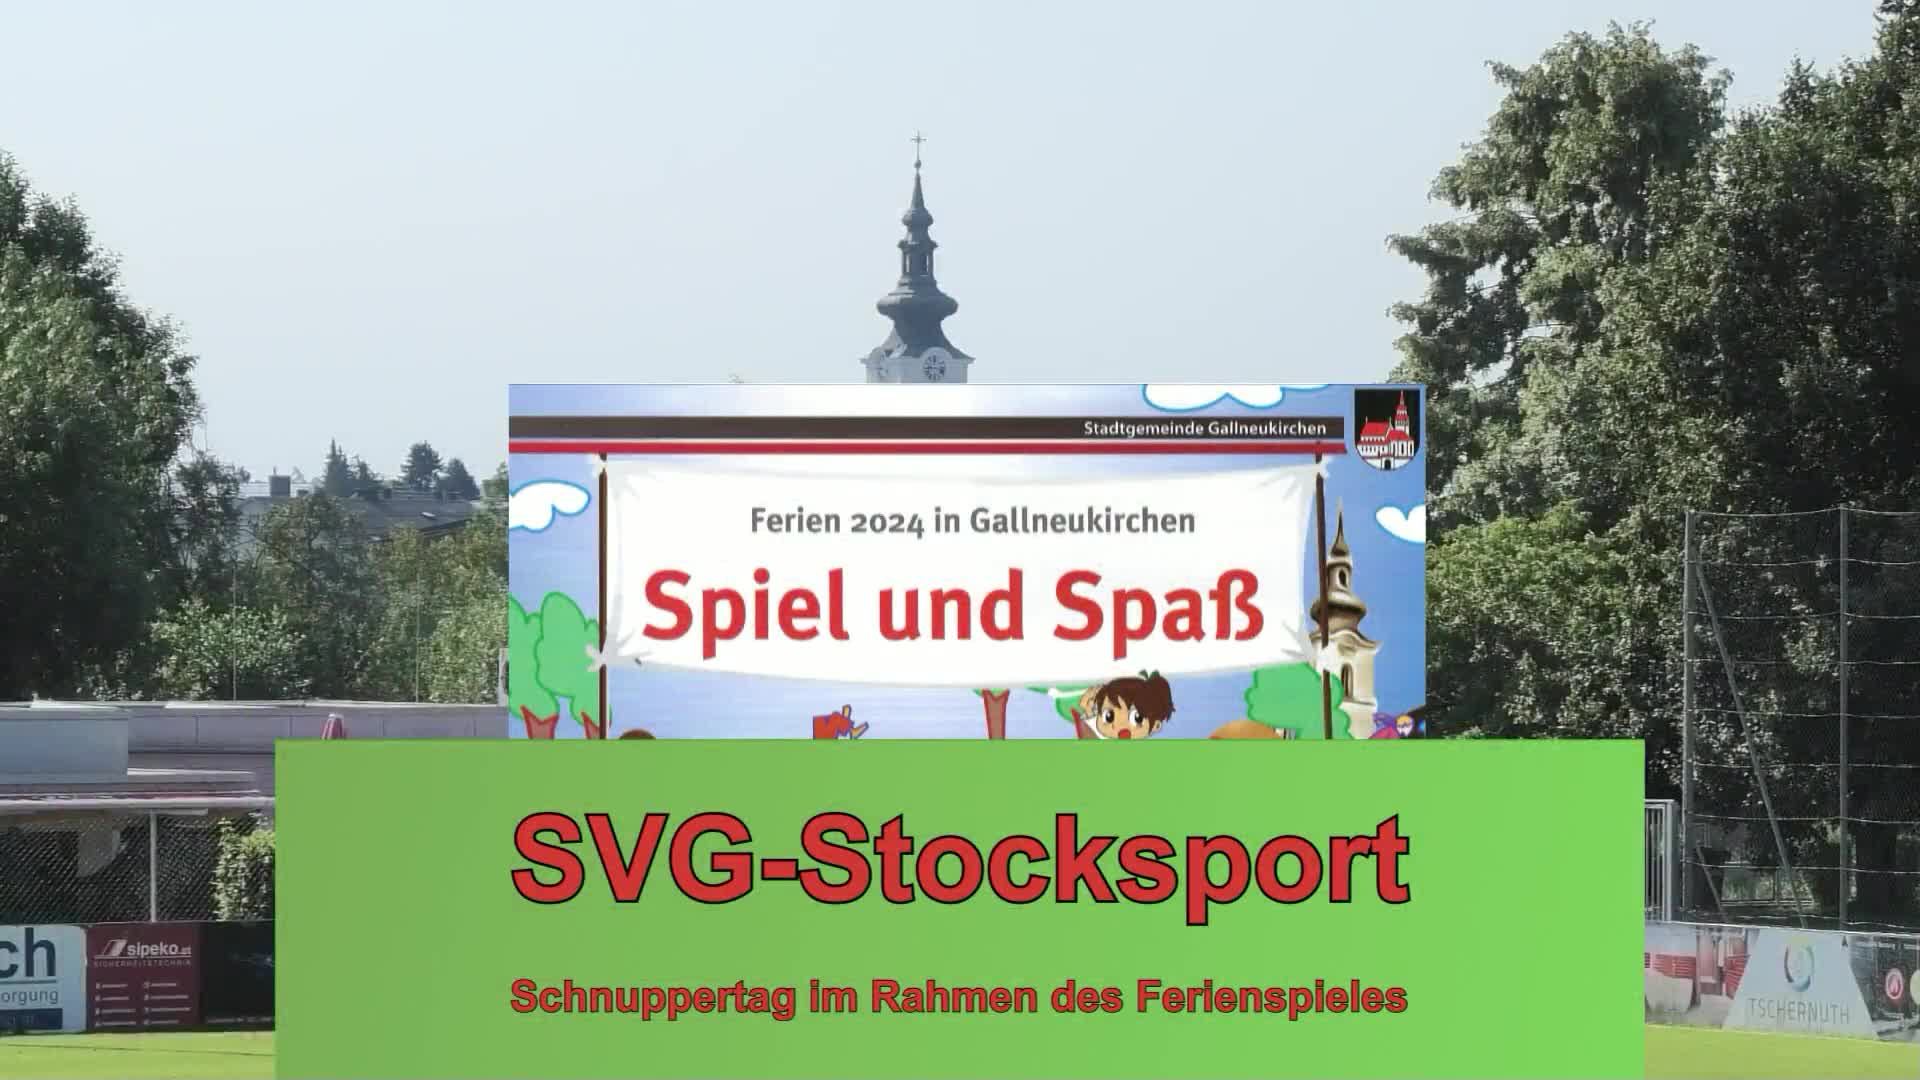 SVG-Stocksport Schnuppertag